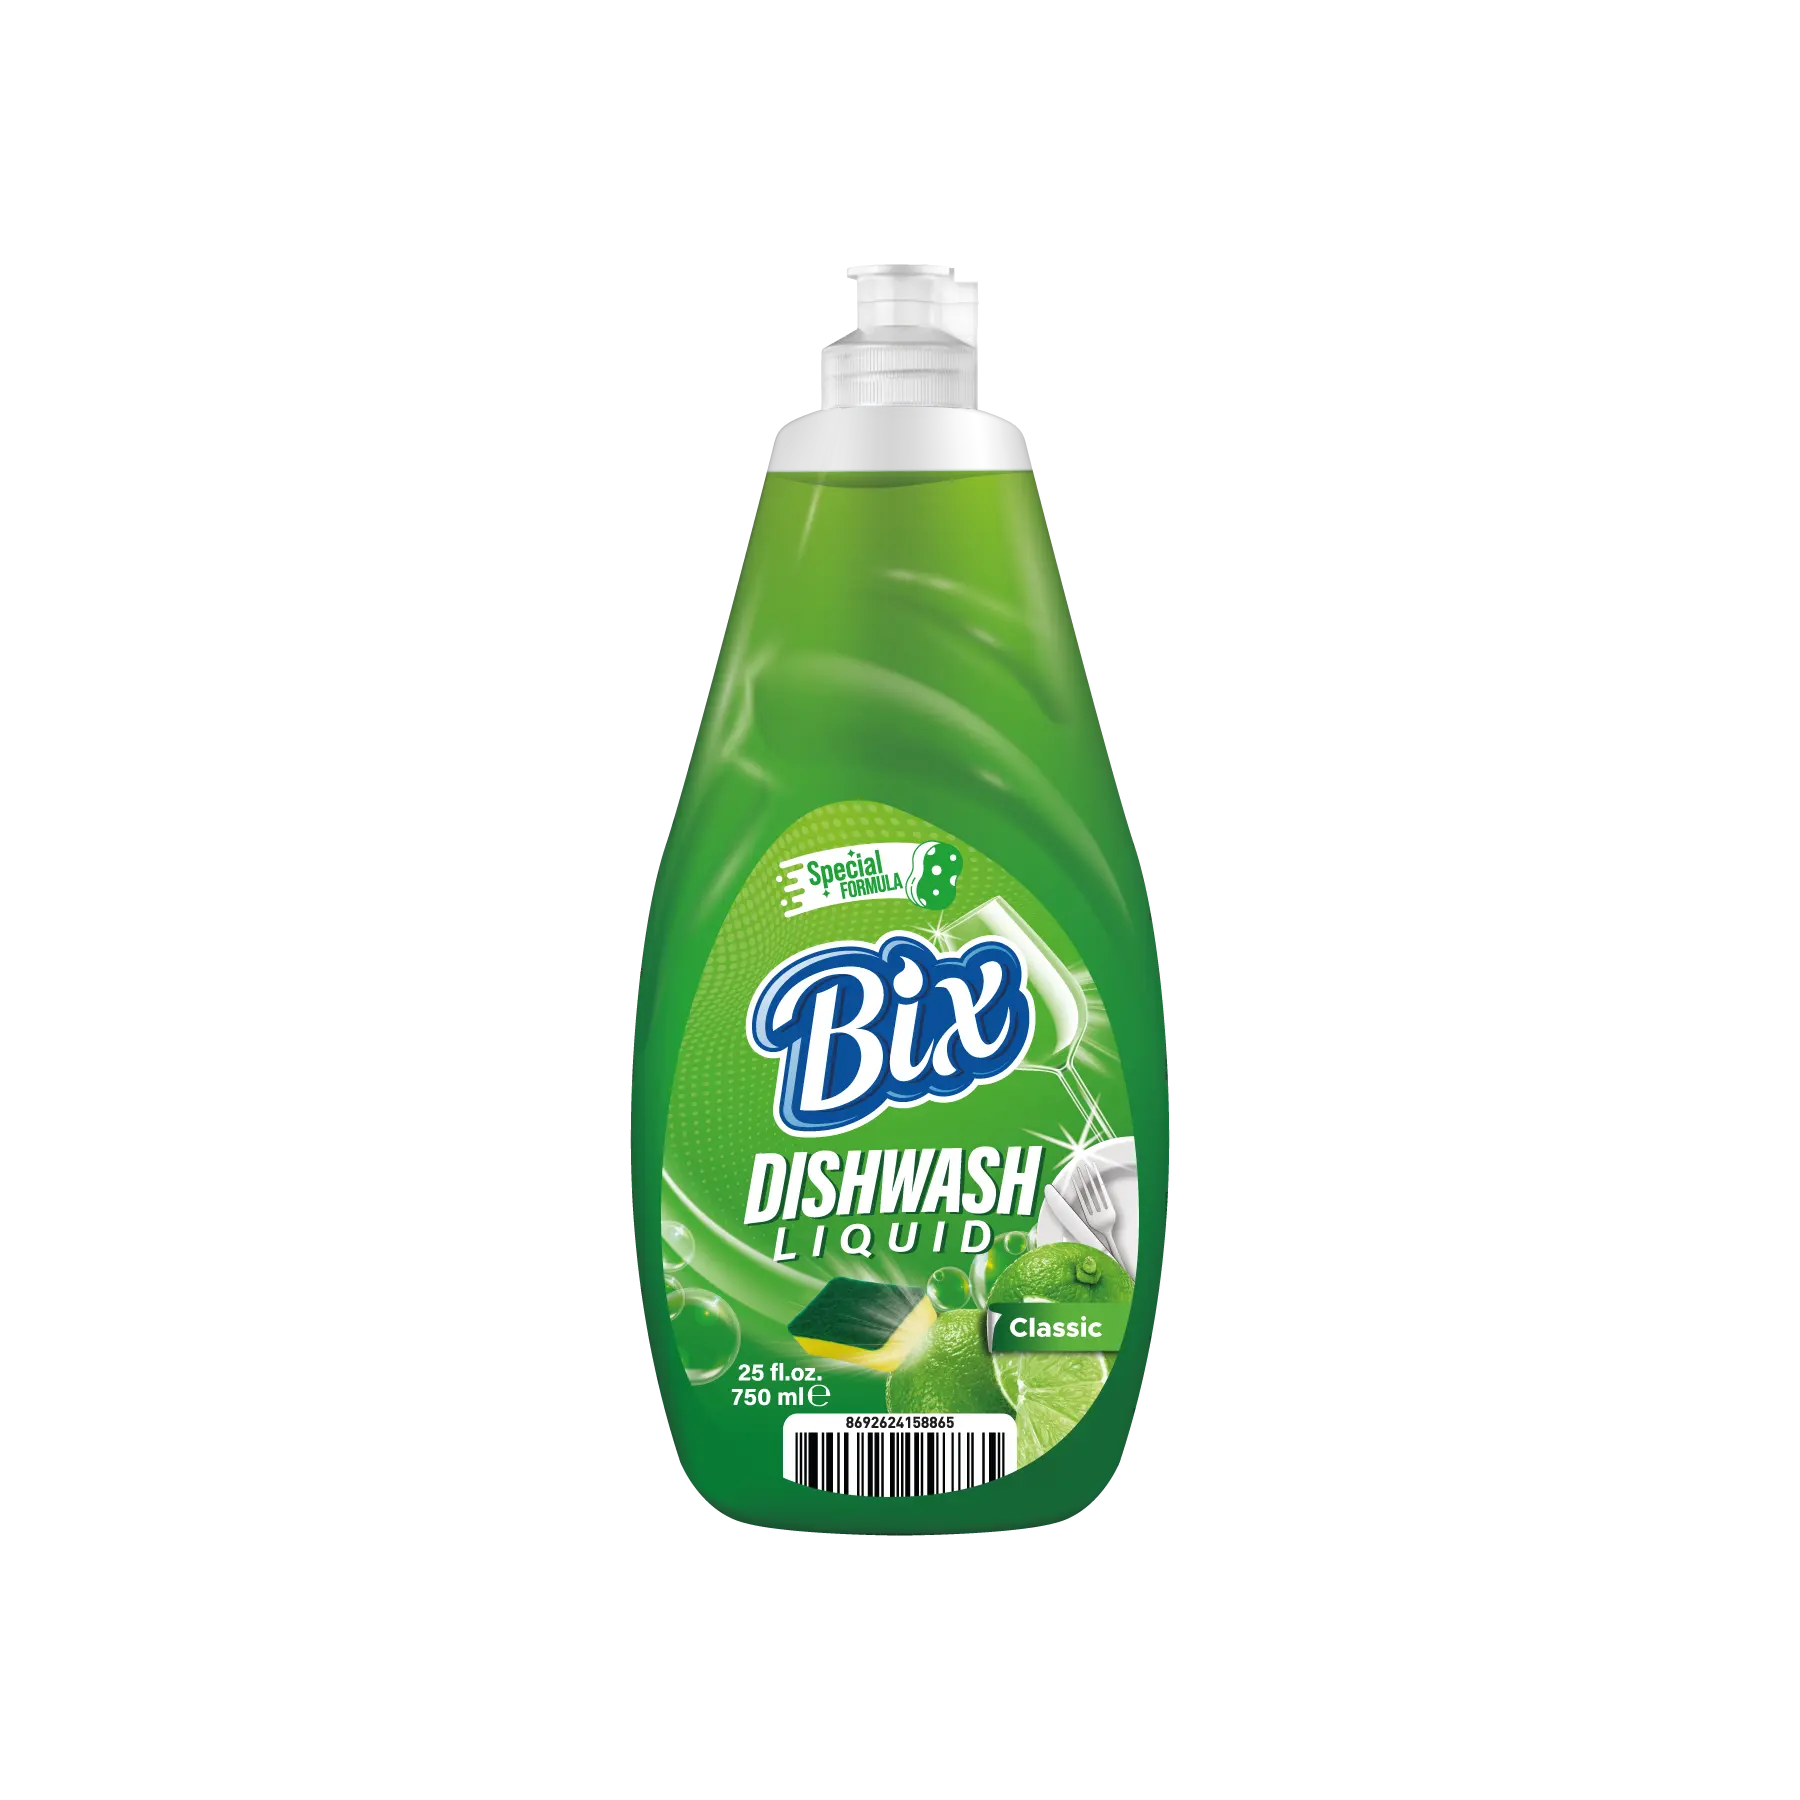 BIX-منظف سائل للاستخدام المنزلي ، سعة 750 مللي ، منظف كلاسيكي لغسل الأطباق ، للبيع بالجملة